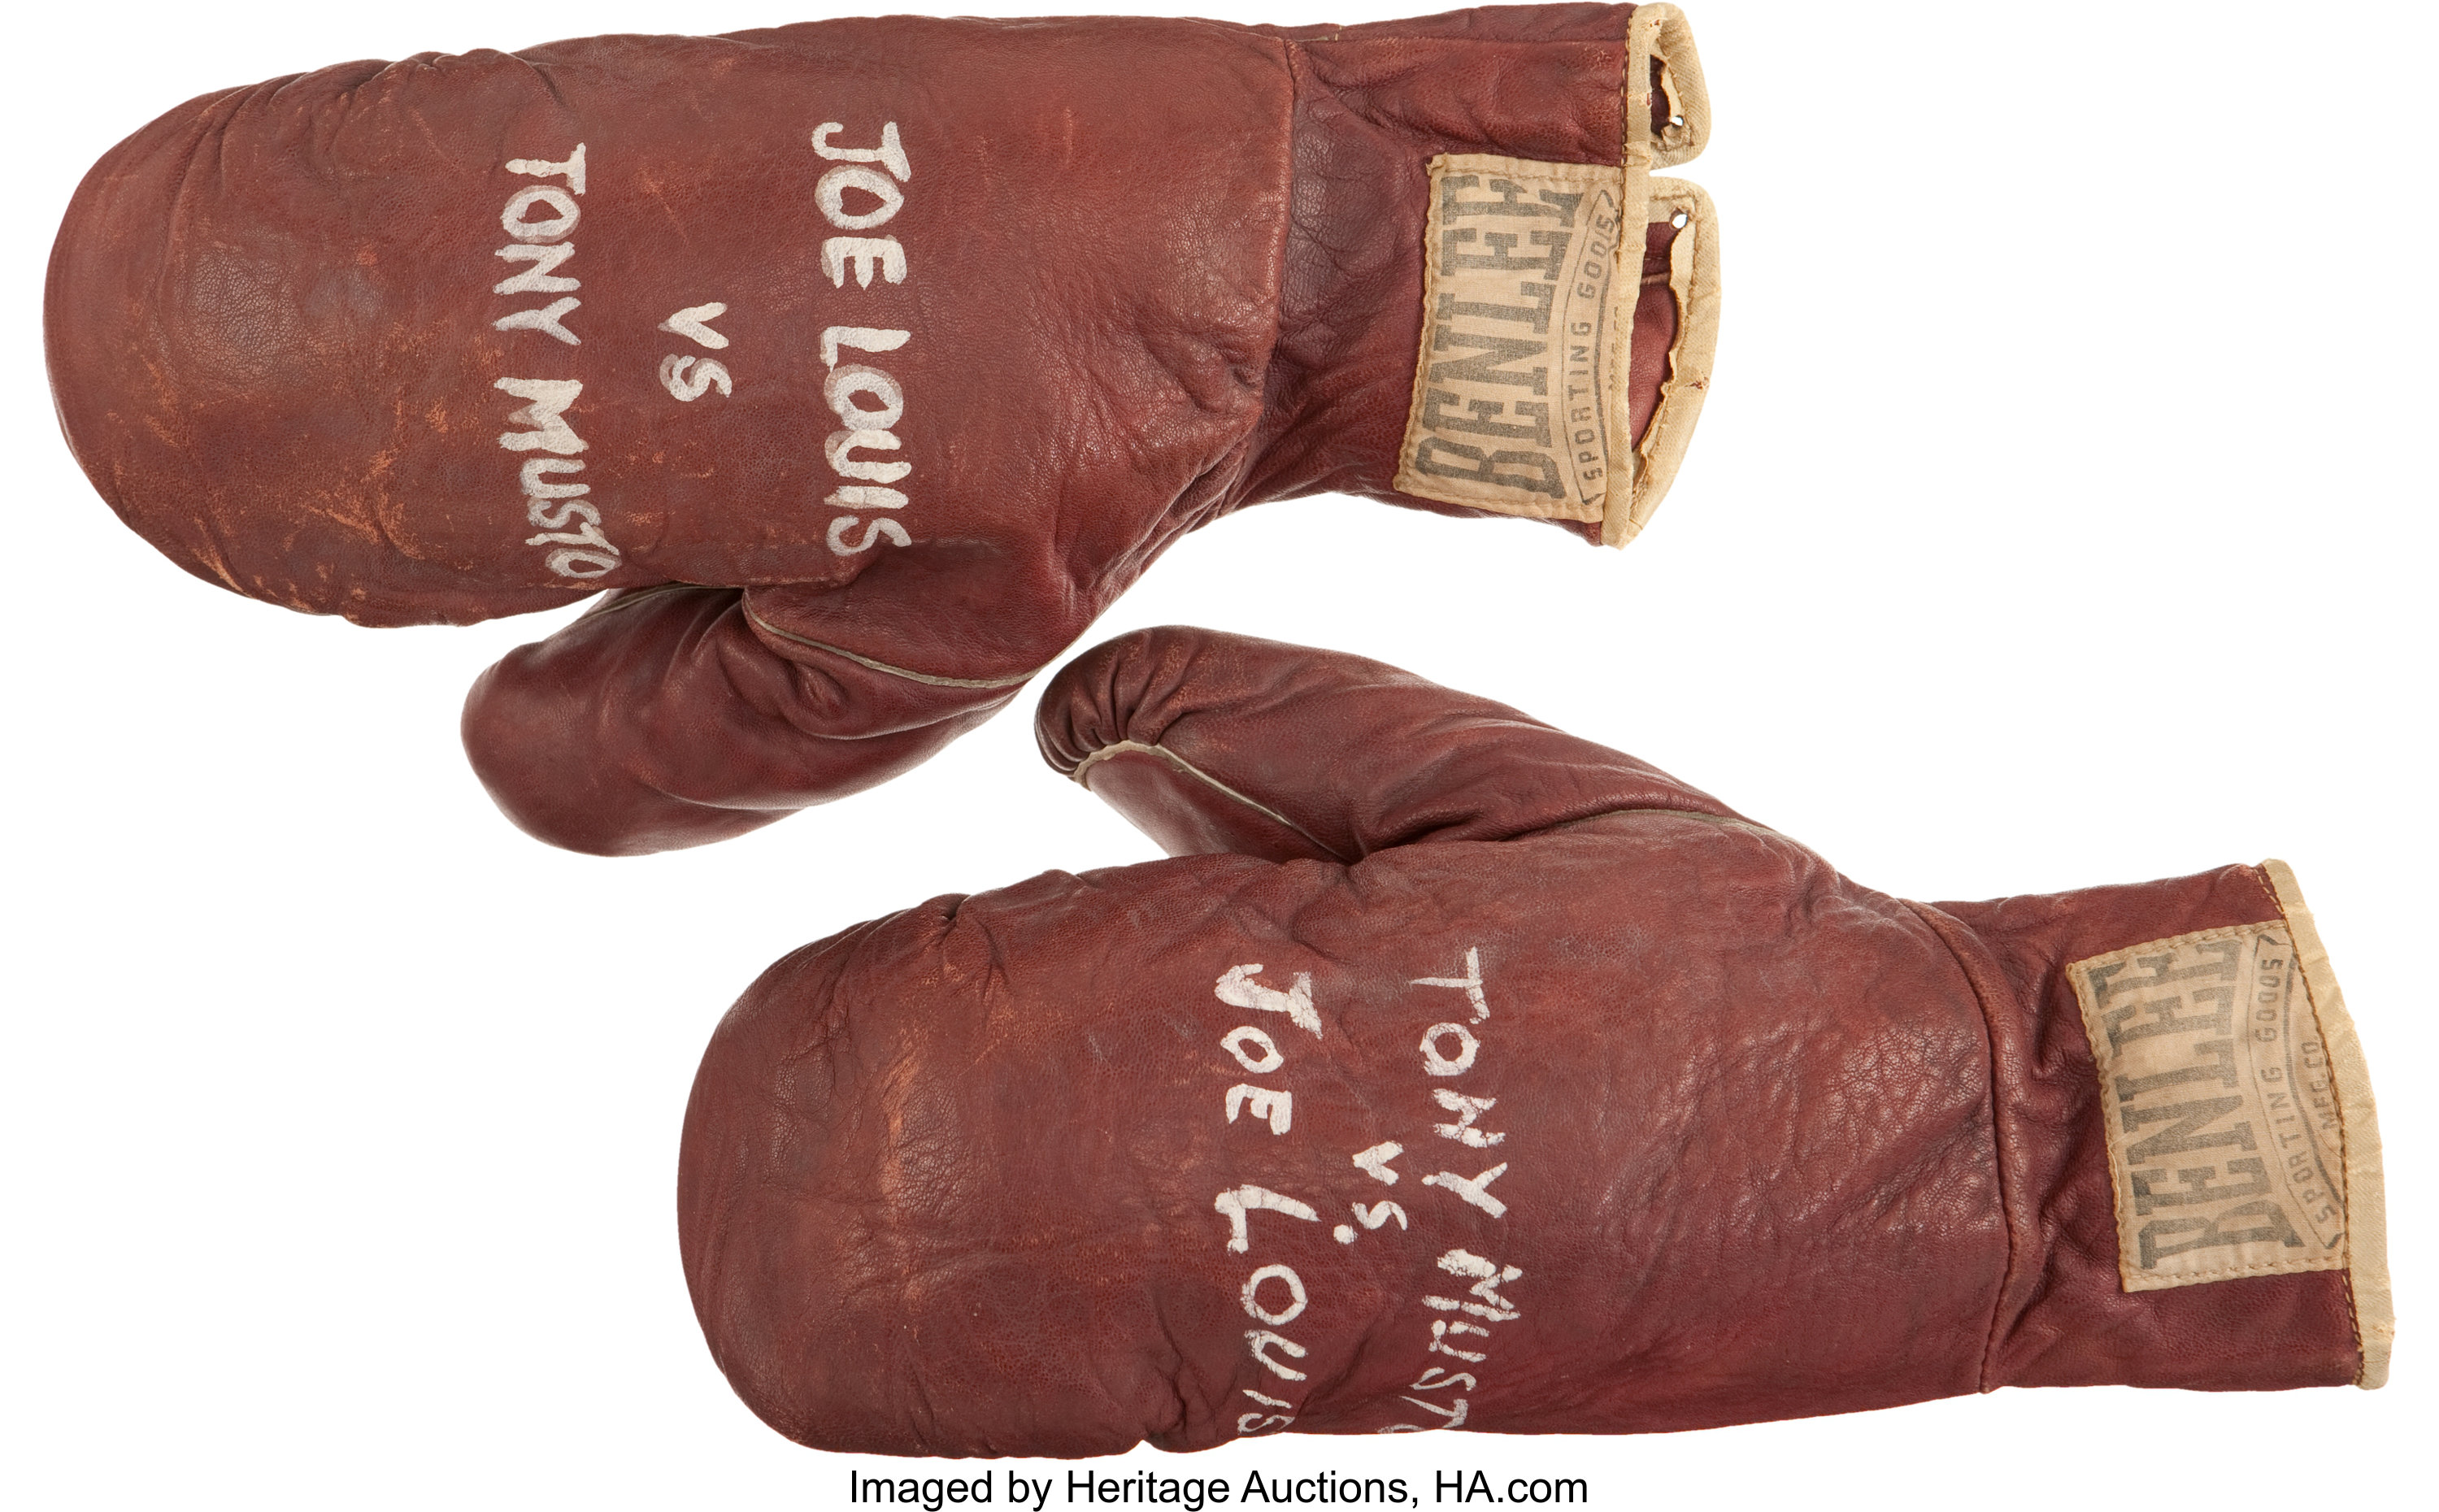 Boxer Joe Louis Wearing Boxing Gloves Wood Print